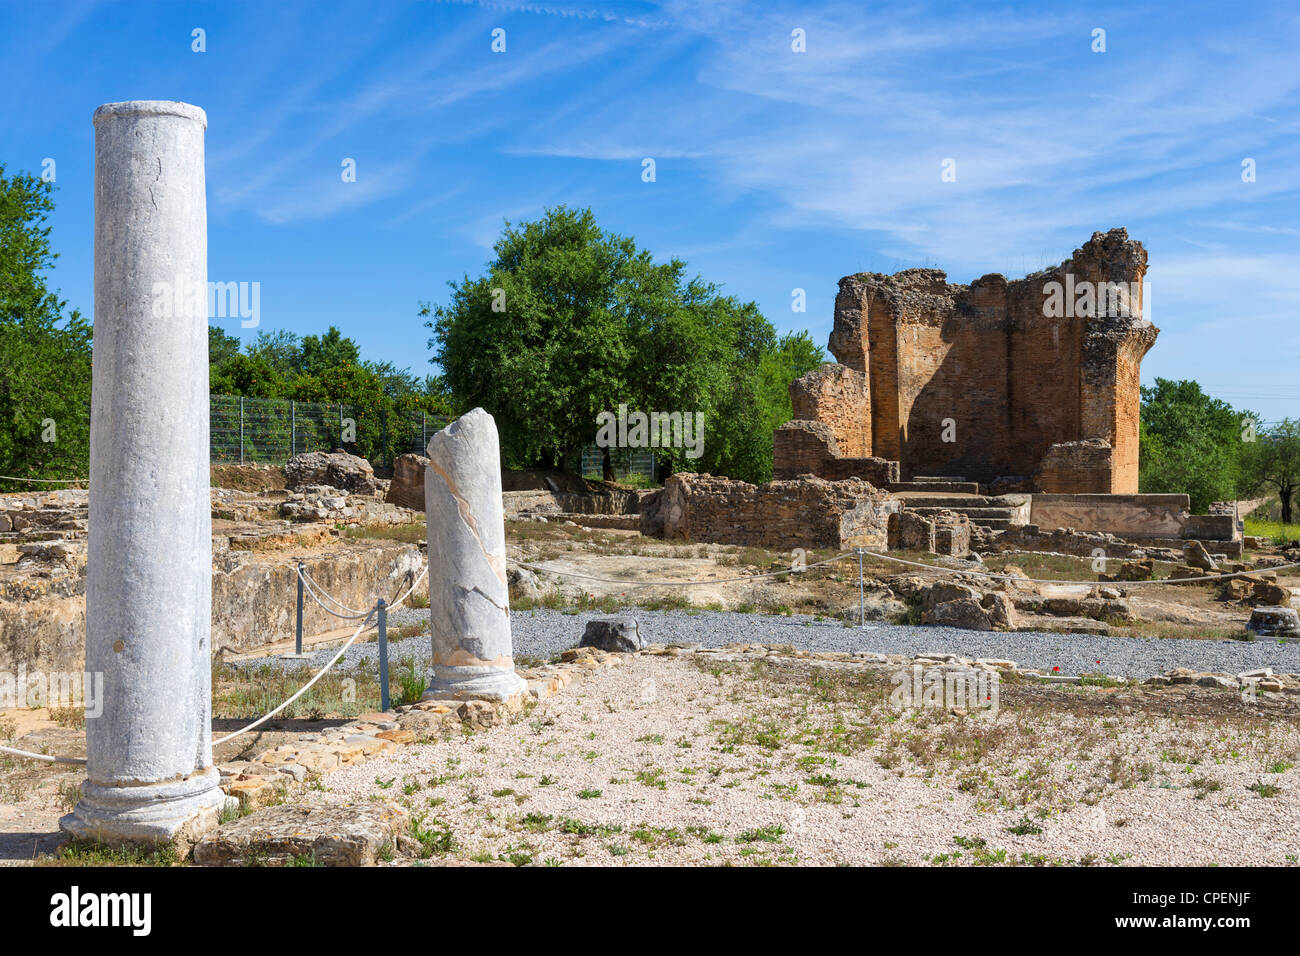 Les ruines romaines de Milreu à Estoi, Algarve, Portugal Banque D'Images